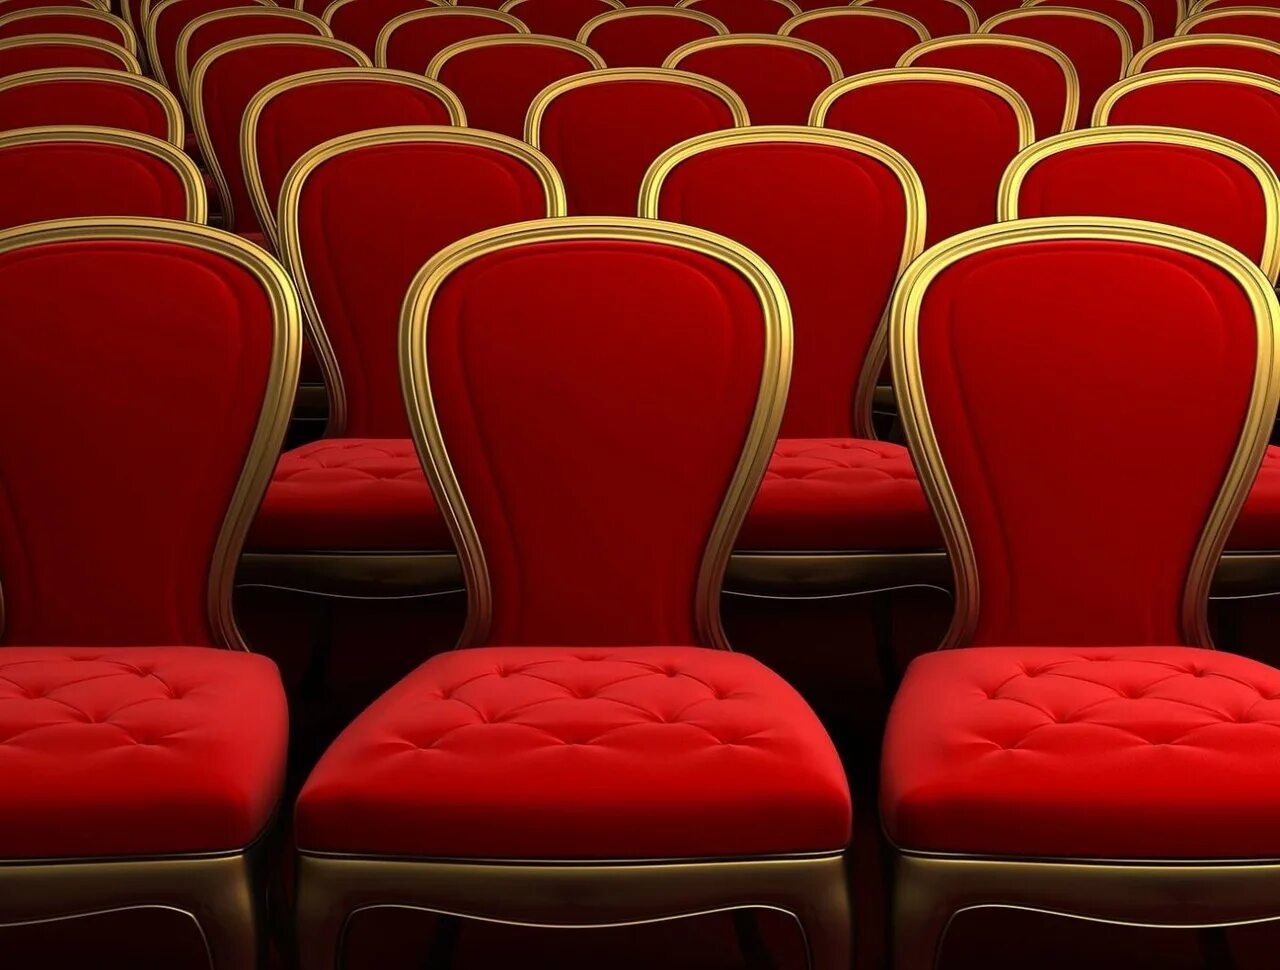 Театральные стулья. Театральные кресла. Кресла в театре. Зрительный зал кресла. Театральные кресла в зале.